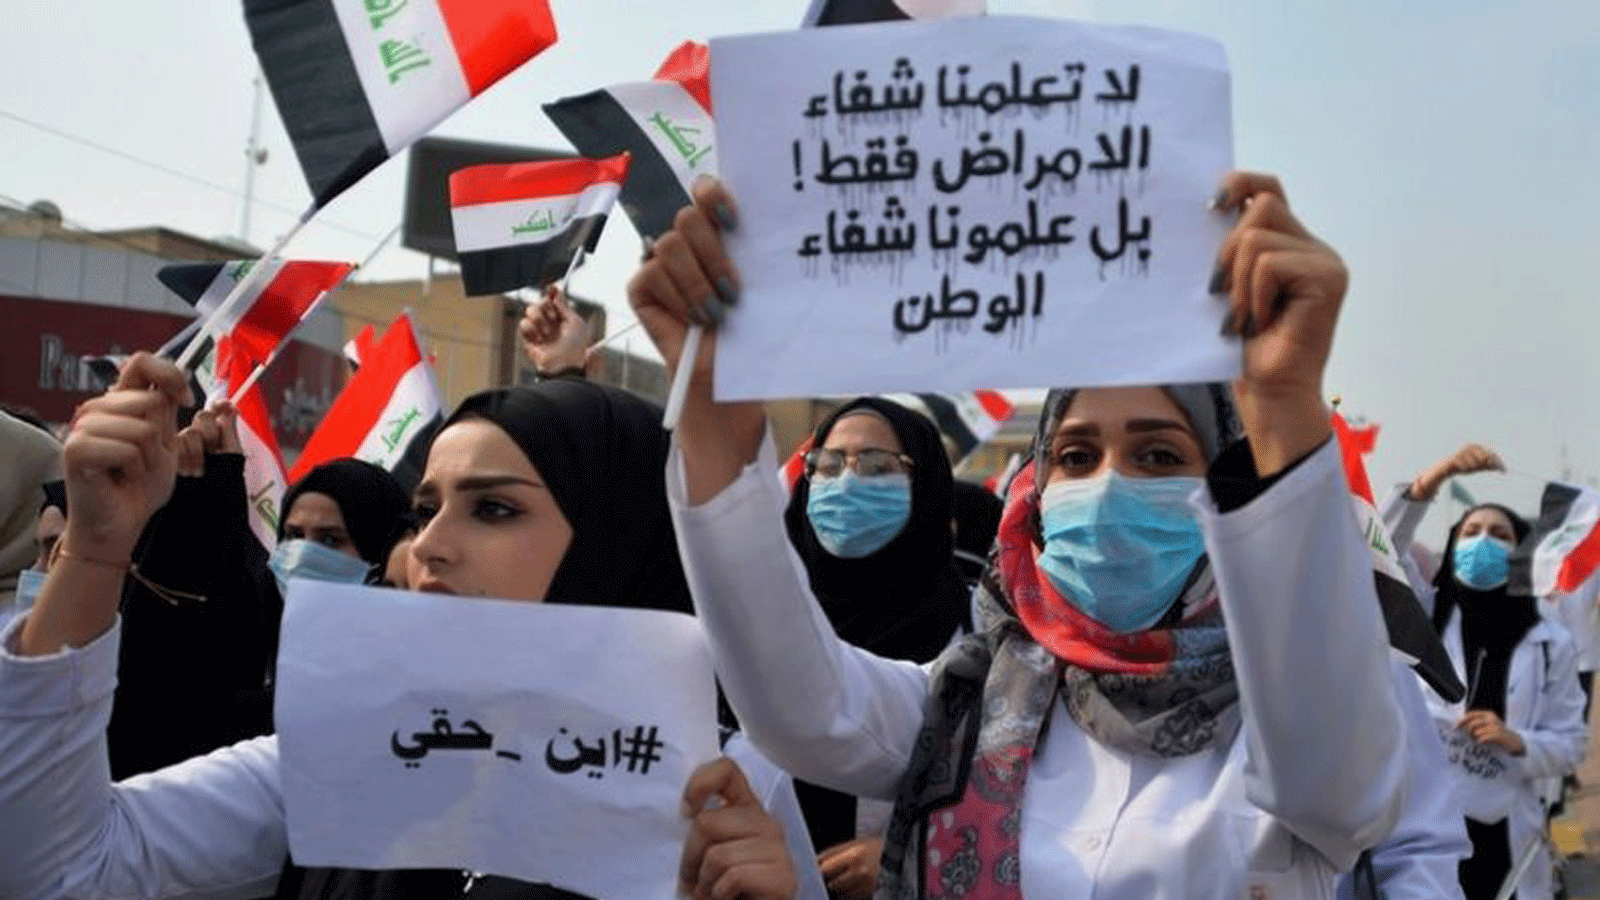 عراقيات شاركن بزخم كبير في تظاهرات الاحتجاج الشعبية التي انطلقت قبل عامين